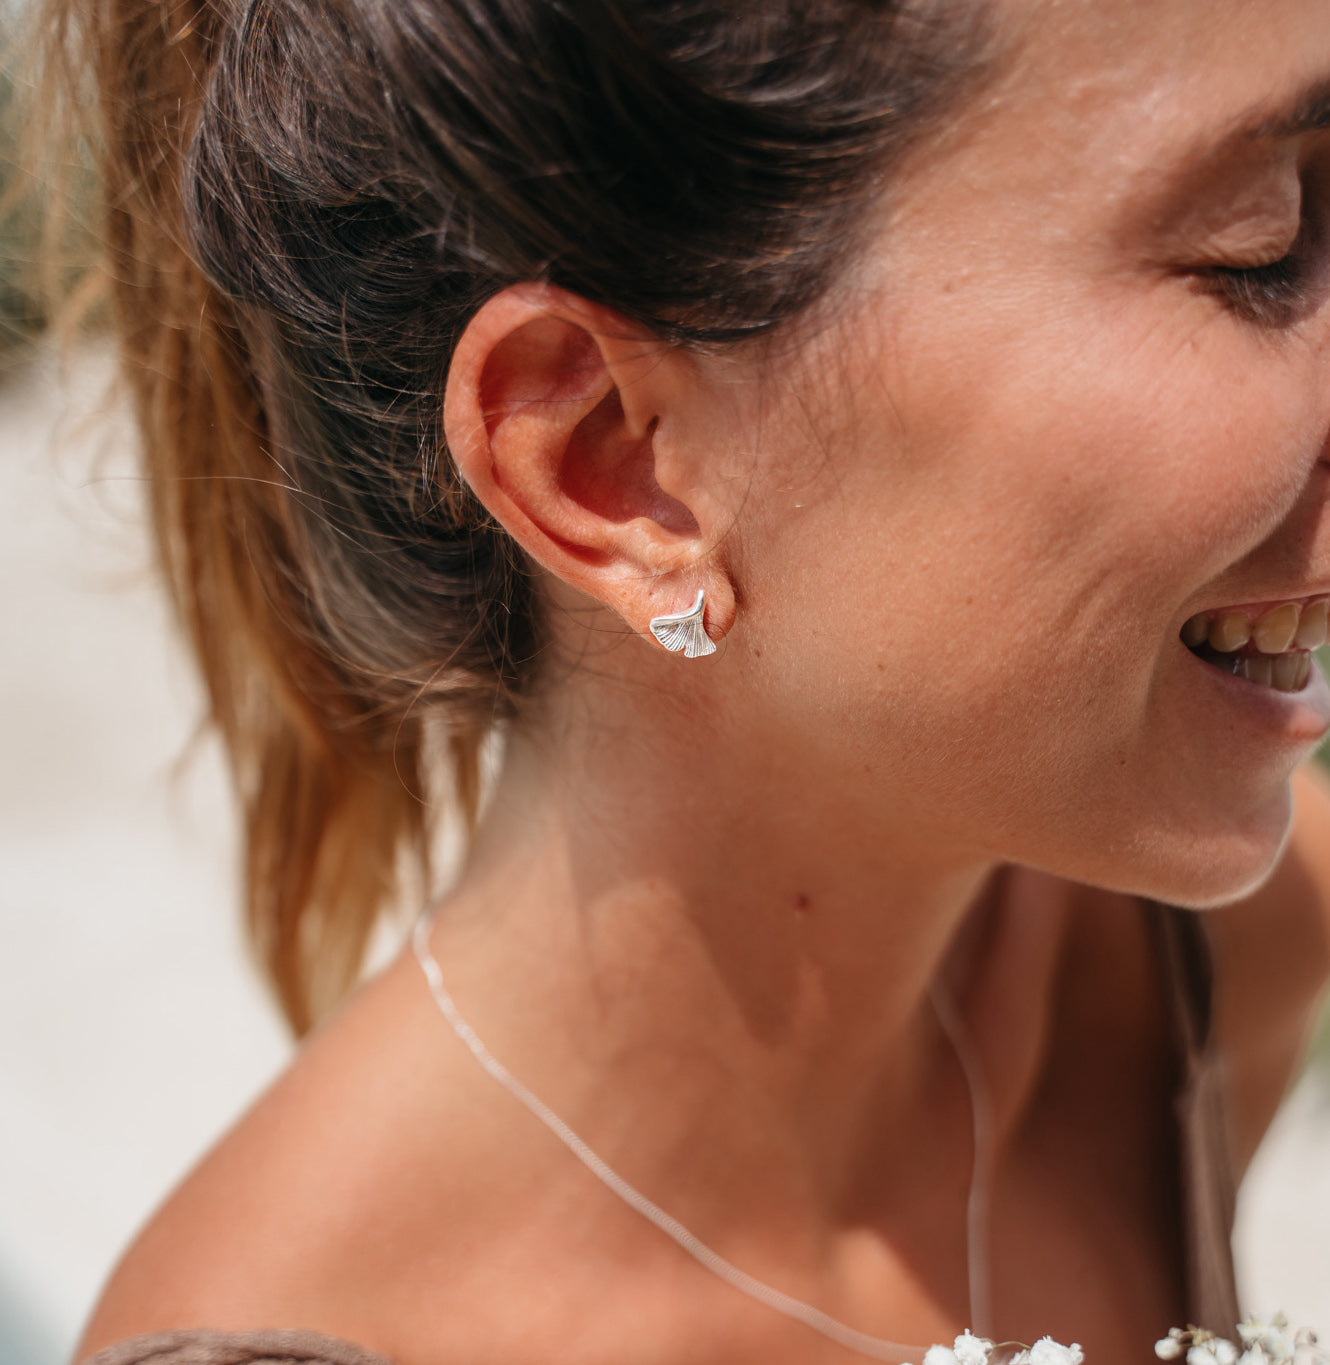 Echt Silber Ohrringe | Handgemacht auf Bali | silberne ohrringe stecker | Handgemachte Ohrringe silber creolen  | Bali Schmuck online kaufen | Fair produzierter Schmuck aus Bali |  Das perfekte Geschenk für Freundin finden bei VERLAN Jewellery 